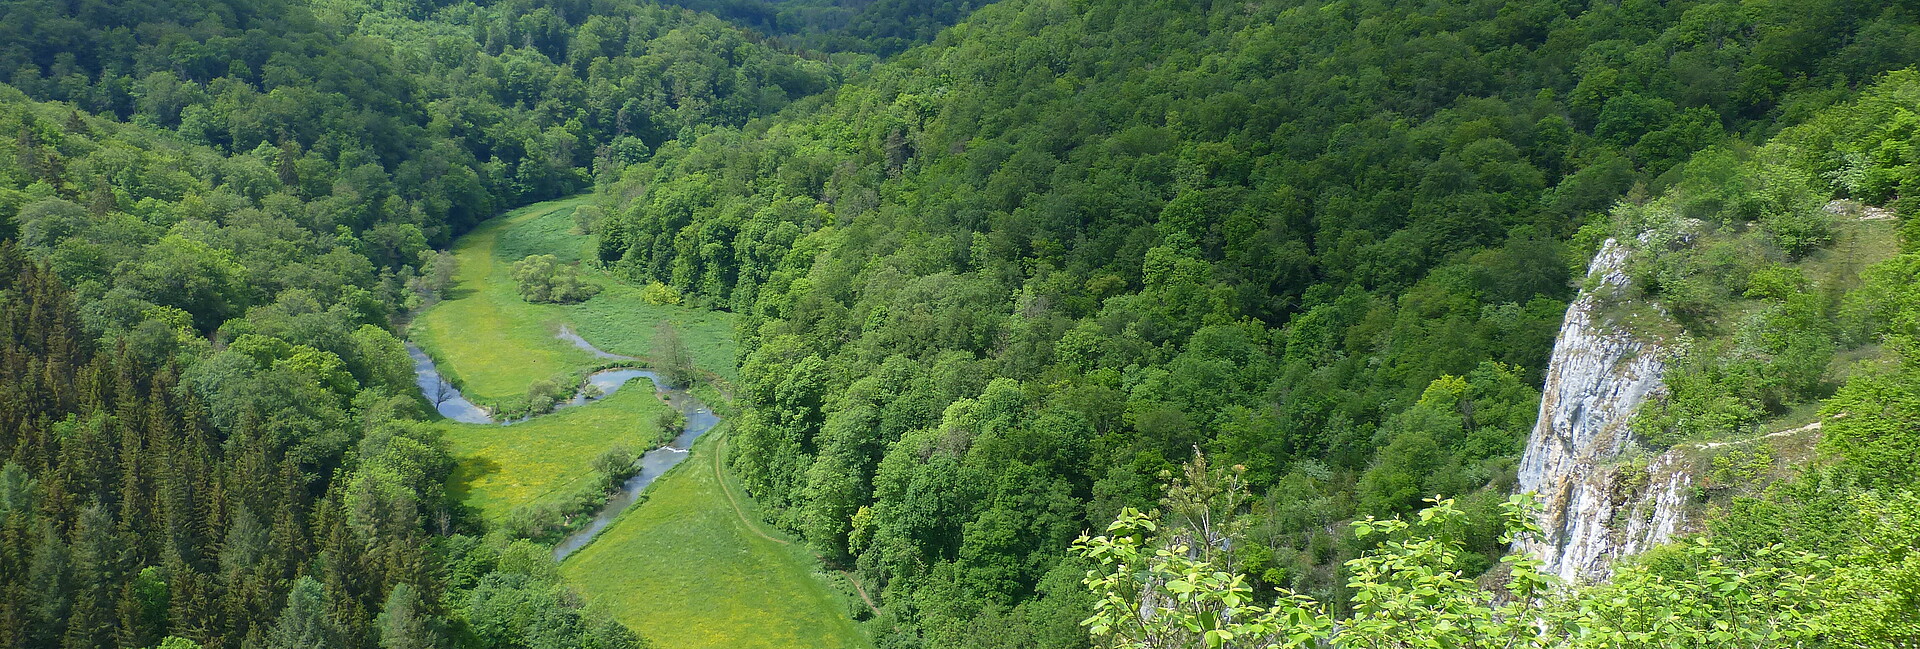 Ausblick auf Wälder, Wiesen, Fluss und Felsen im Großen Lautertal